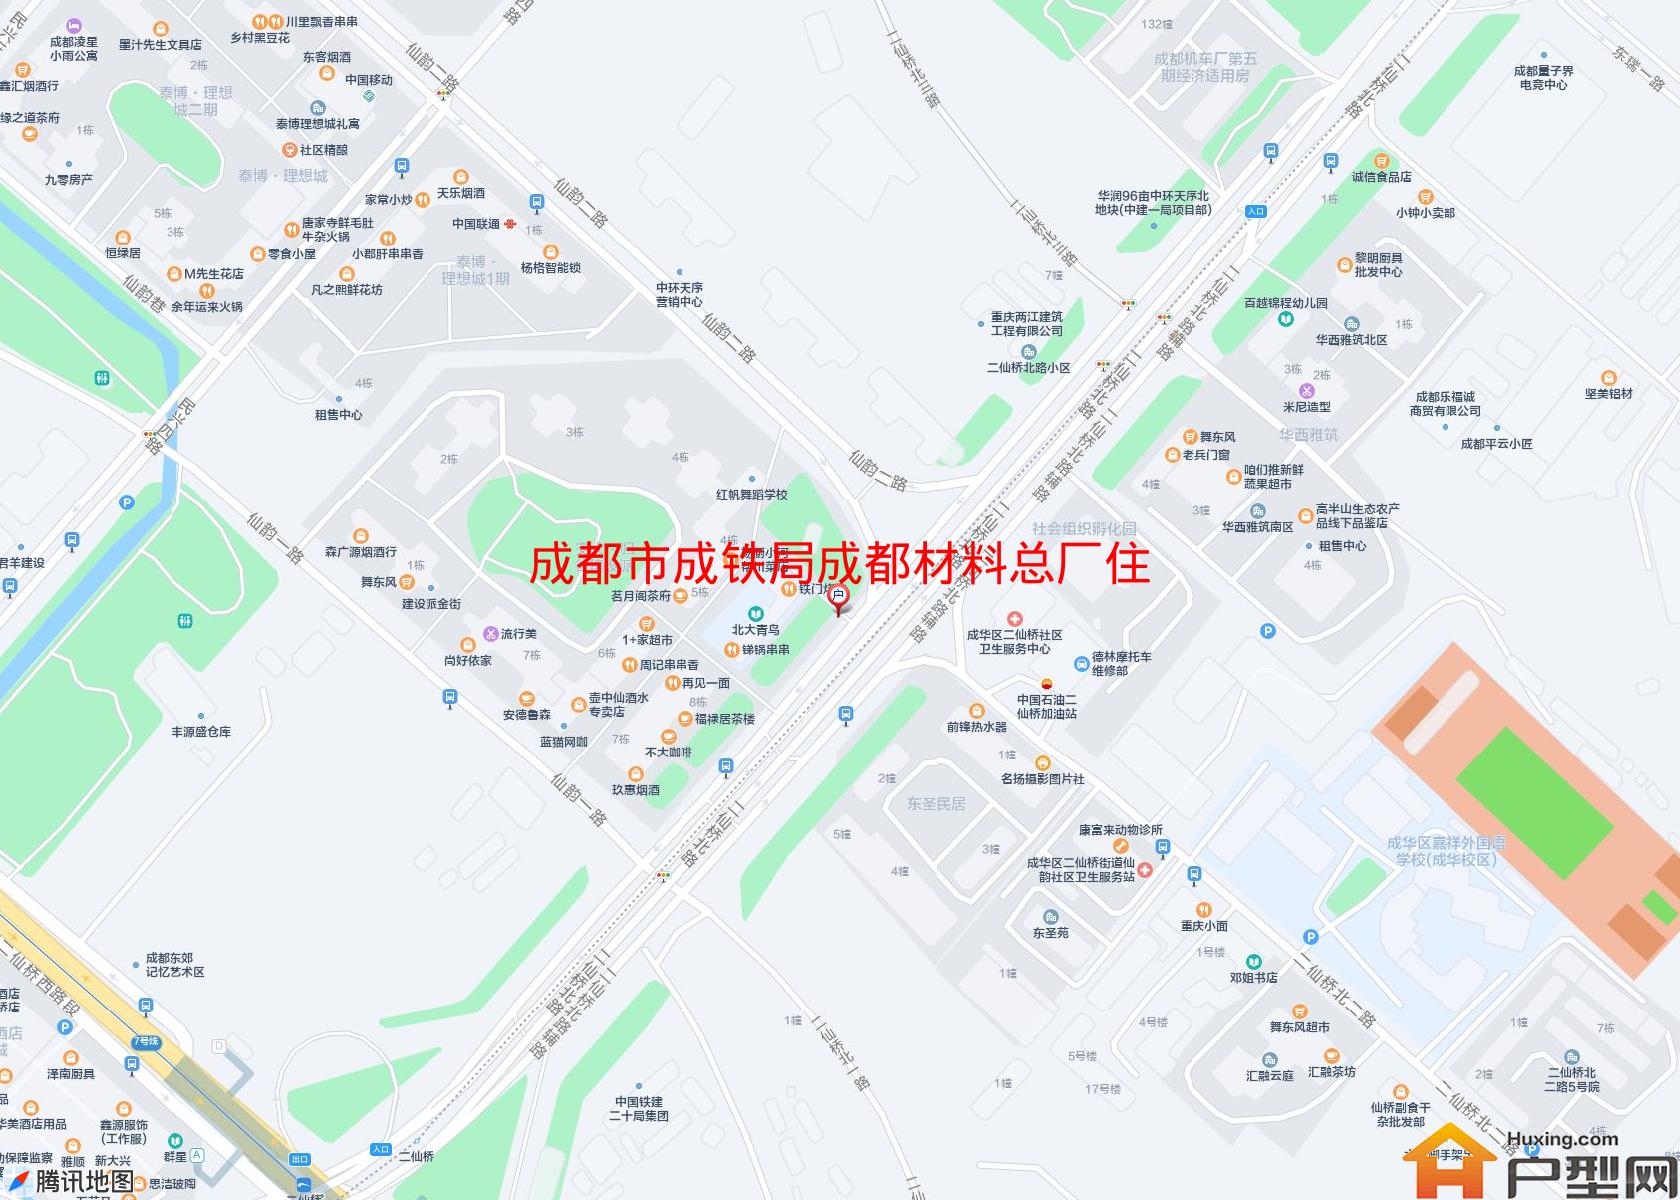 成铁局成都材料总厂住宅楼小区 - 户型网